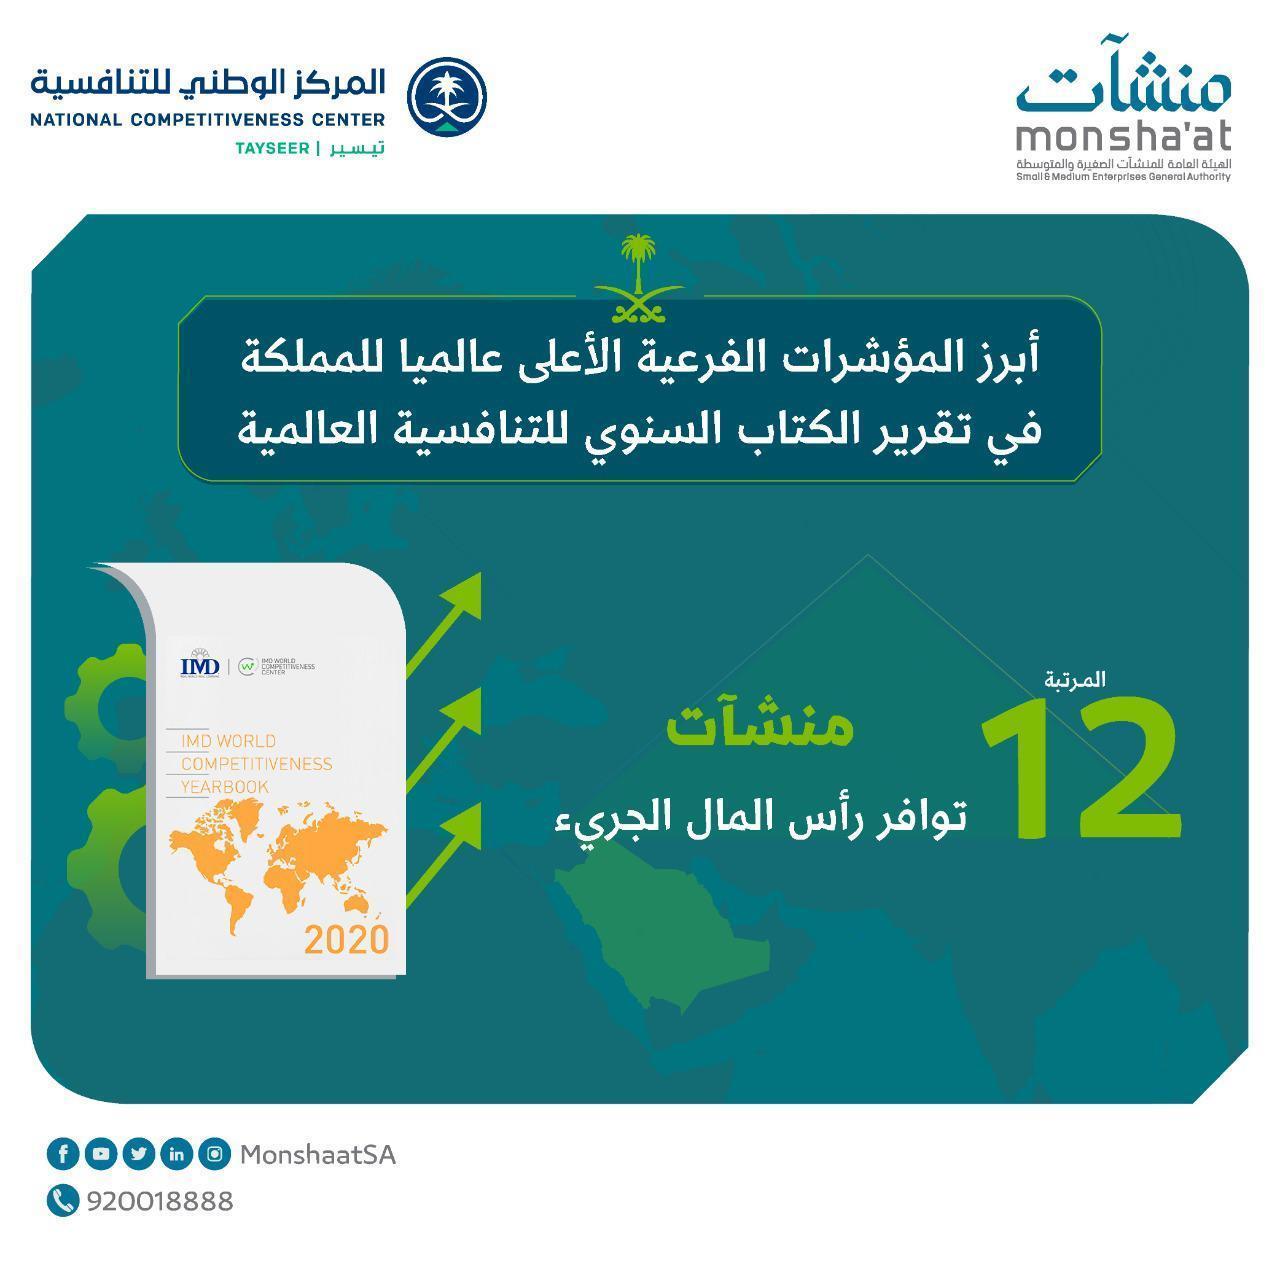 صعود رأس المال الجريء في السعودية: فرص وتحديات - إحصائيات رئيسية للرأس المال الجريء في المملكة العربية السعودية